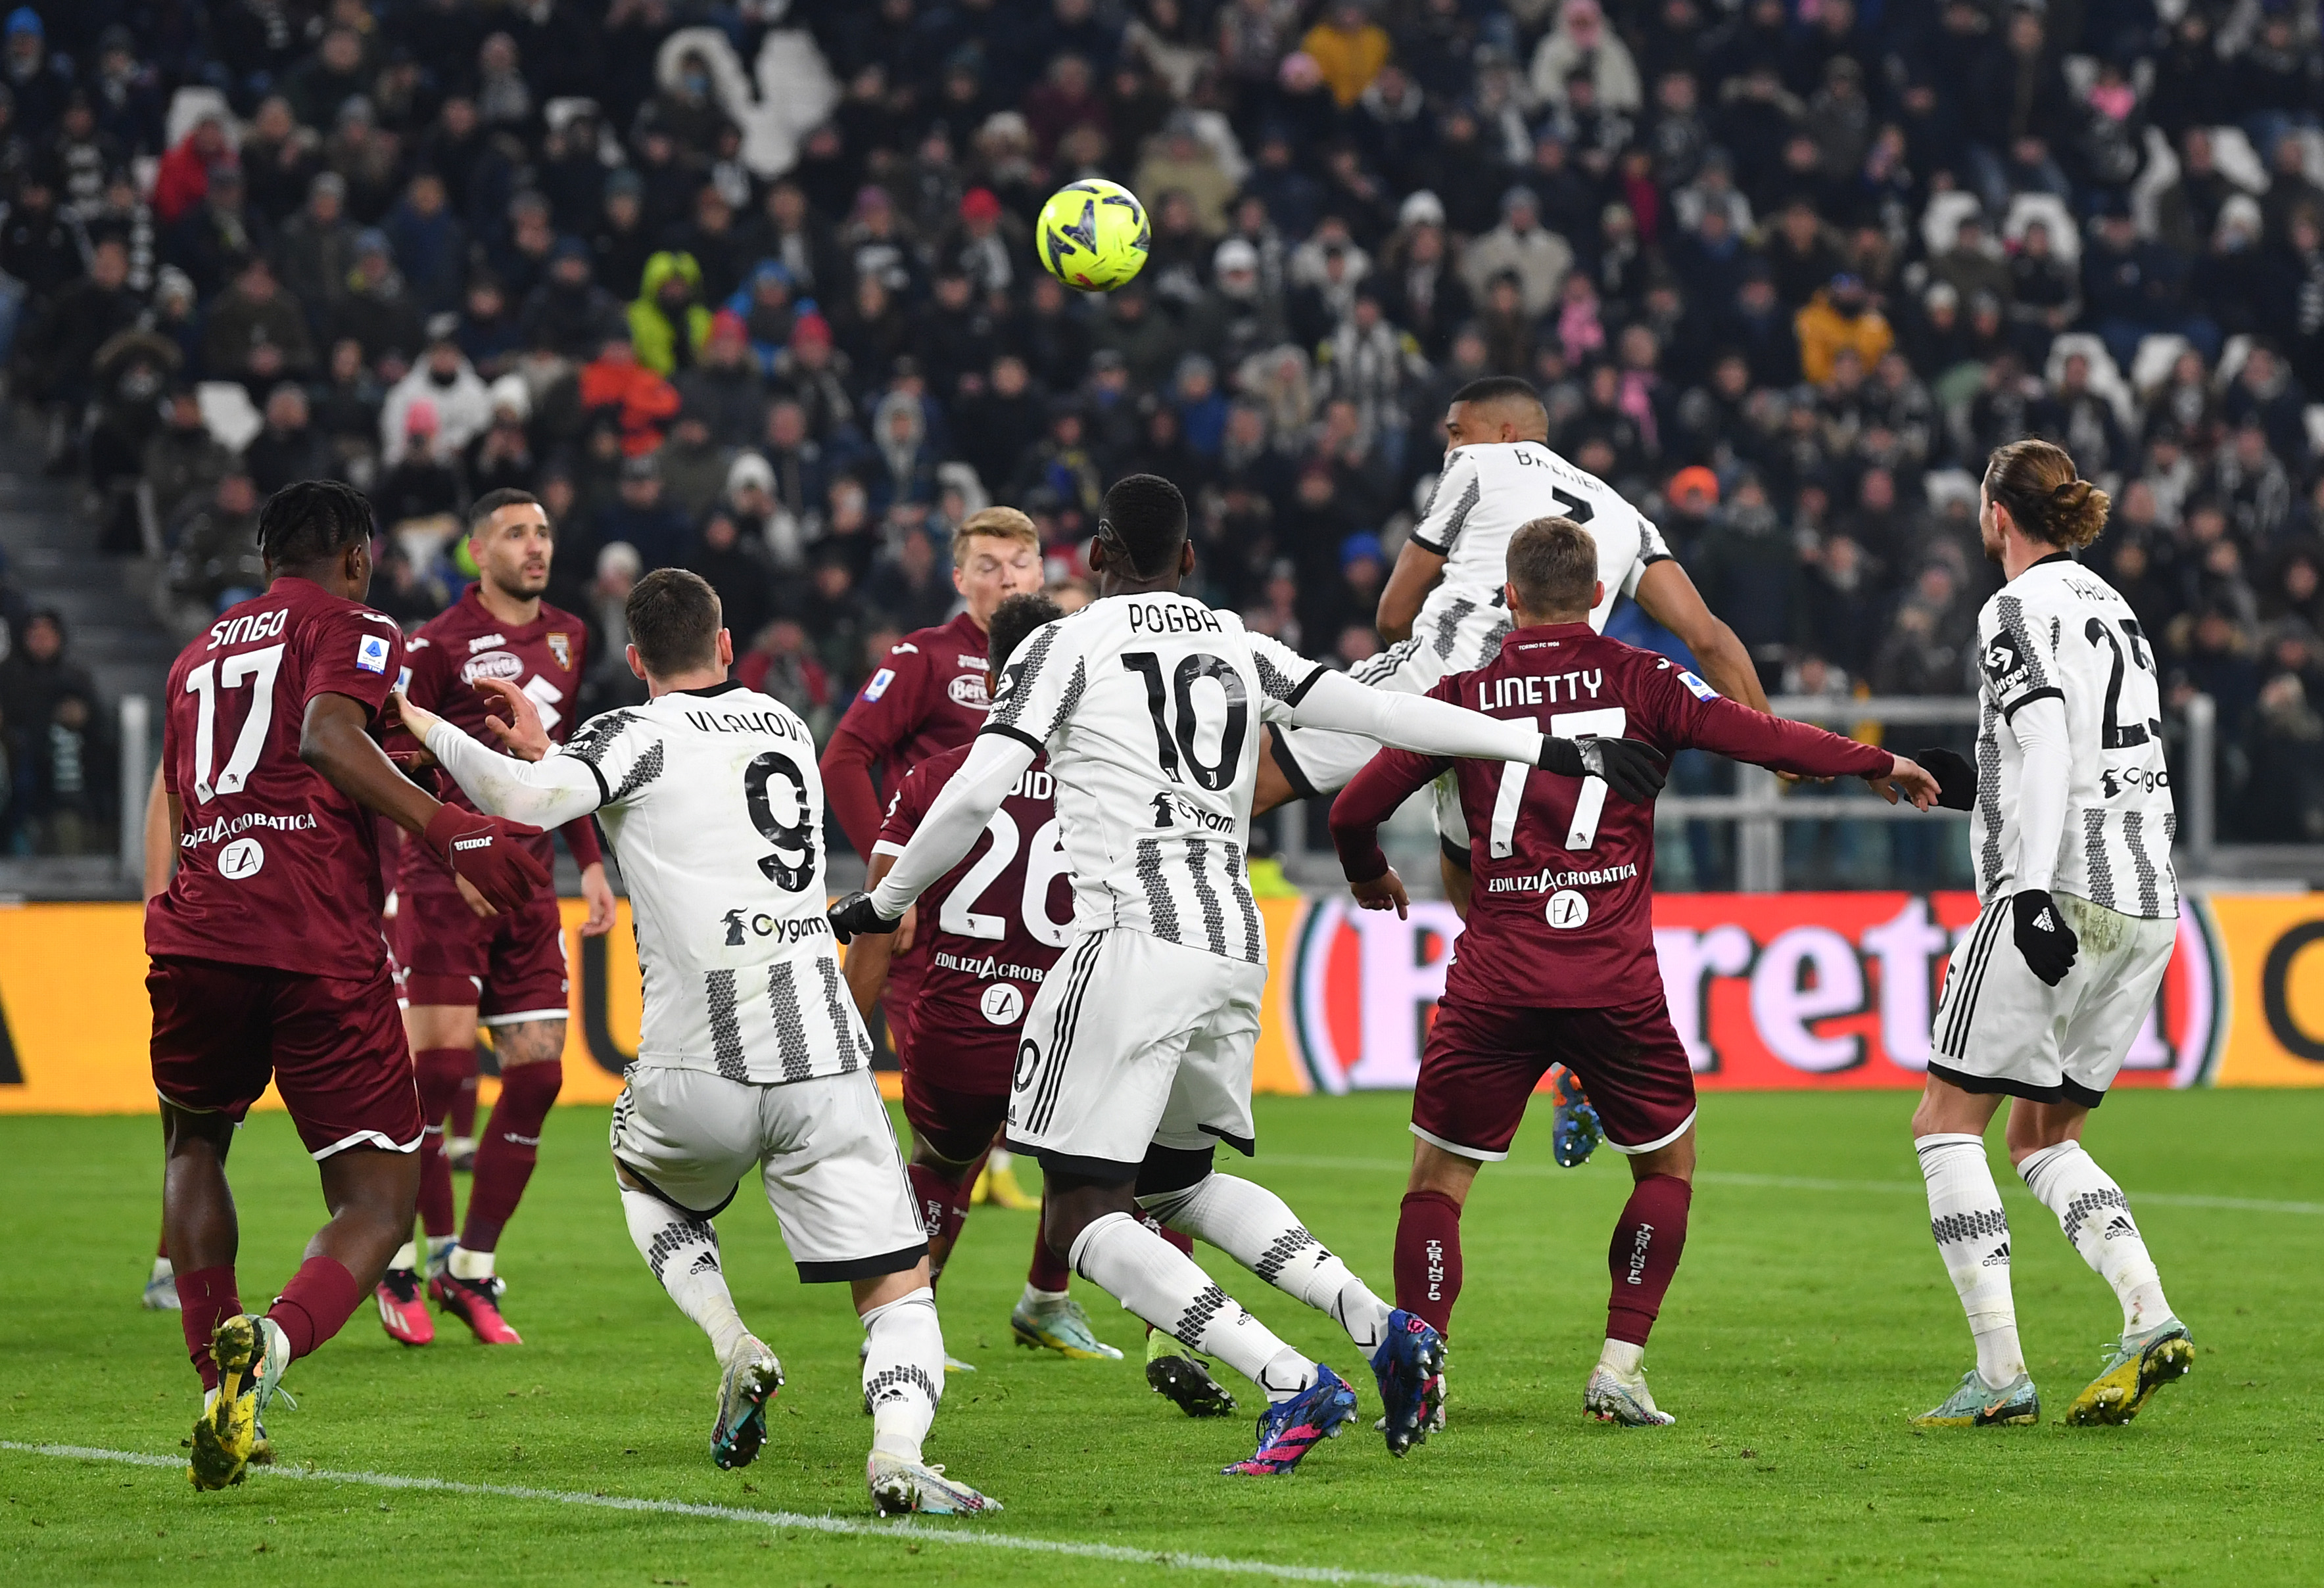 Torino - Juventus, Live Video 19:00, Digi Sport 1. Pentru prima dată după multă vreme, Juve nu e favorită